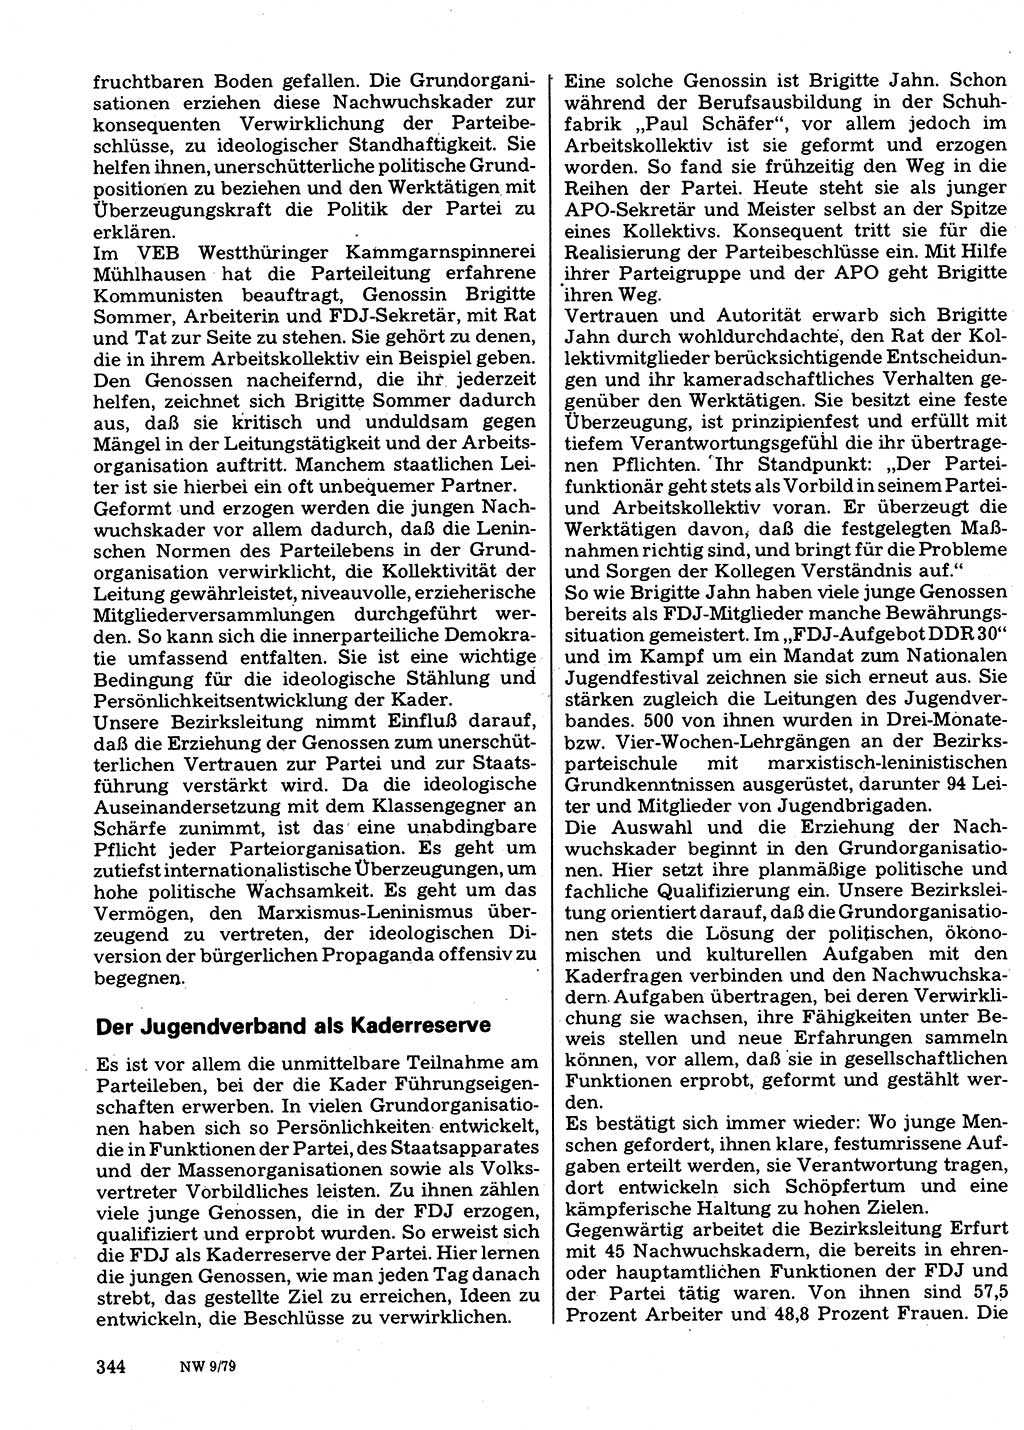 Neuer Weg (NW), Organ des Zentralkomitees (ZK) der SED (Sozialistische Einheitspartei Deutschlands) für Fragen des Parteilebens, 34. Jahrgang [Deutsche Demokratische Republik (DDR)] 1979, Seite 344 (NW ZK SED DDR 1979, S. 344)